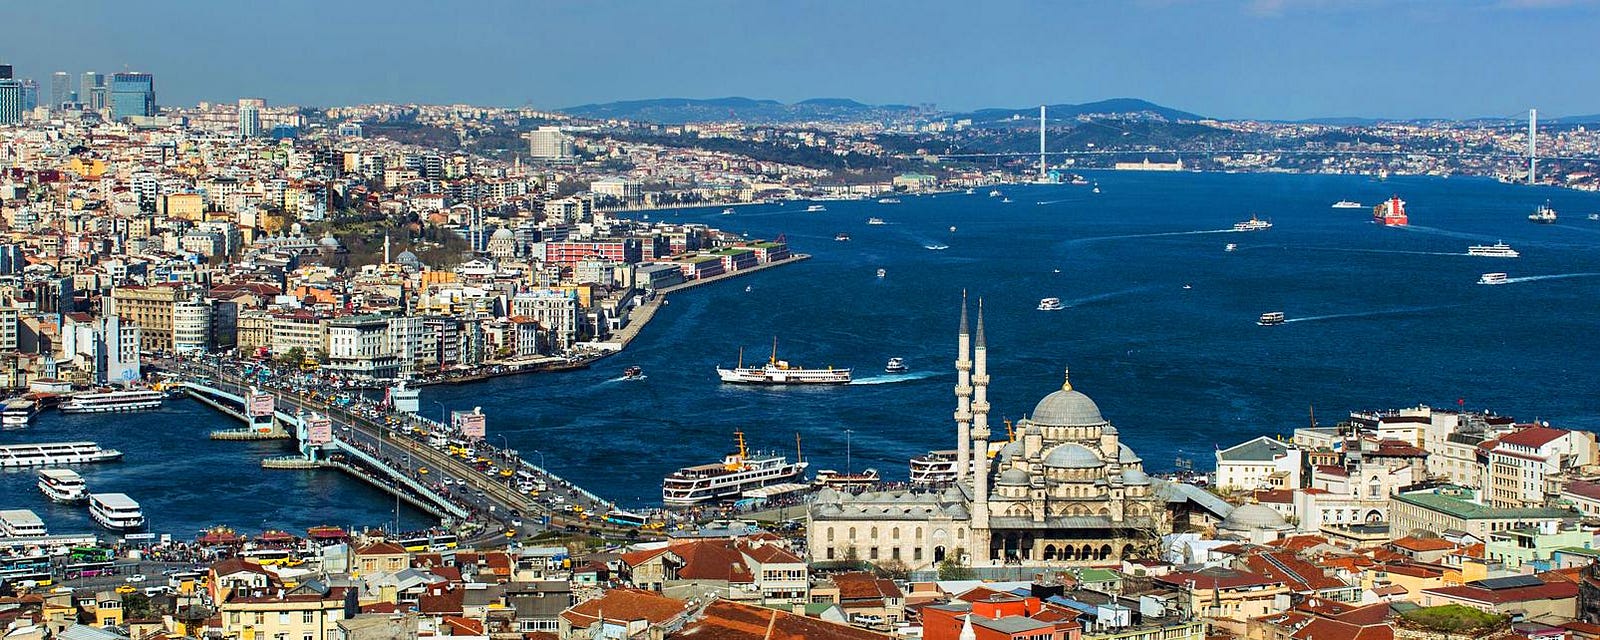 Resultado de imagem para istanbul